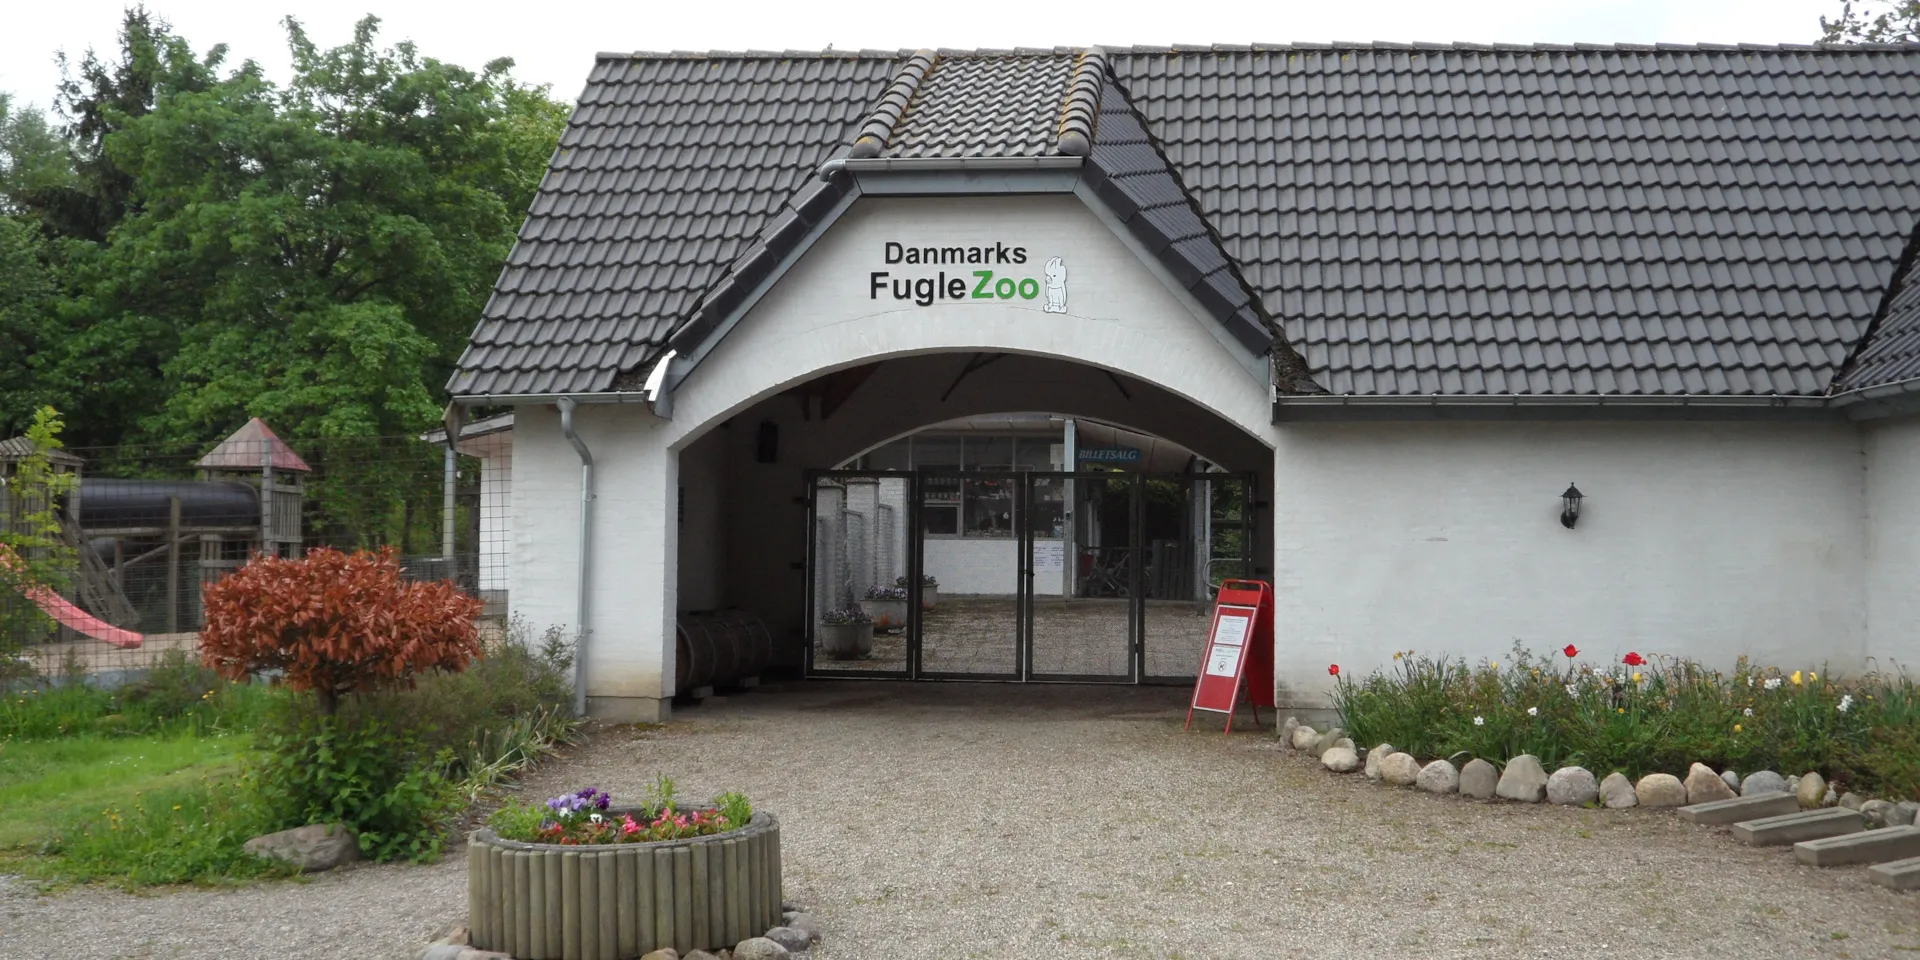 Danmarks Fugle Zoo